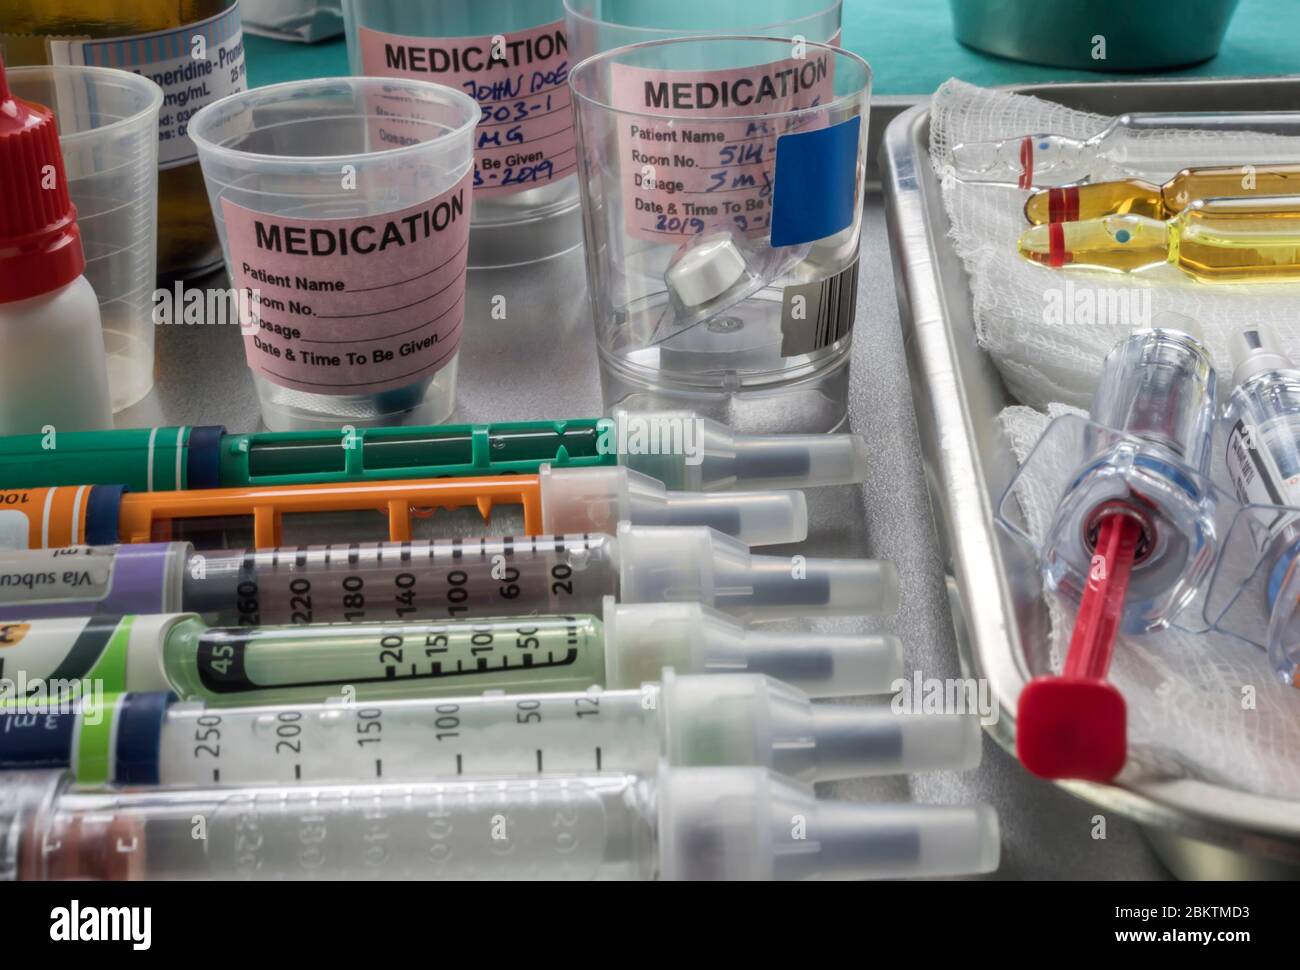 Siringhe di farmaci per insulina vicino ai flaconcini di medicinali preparati in ospedale, immagine concettuale Foto Stock